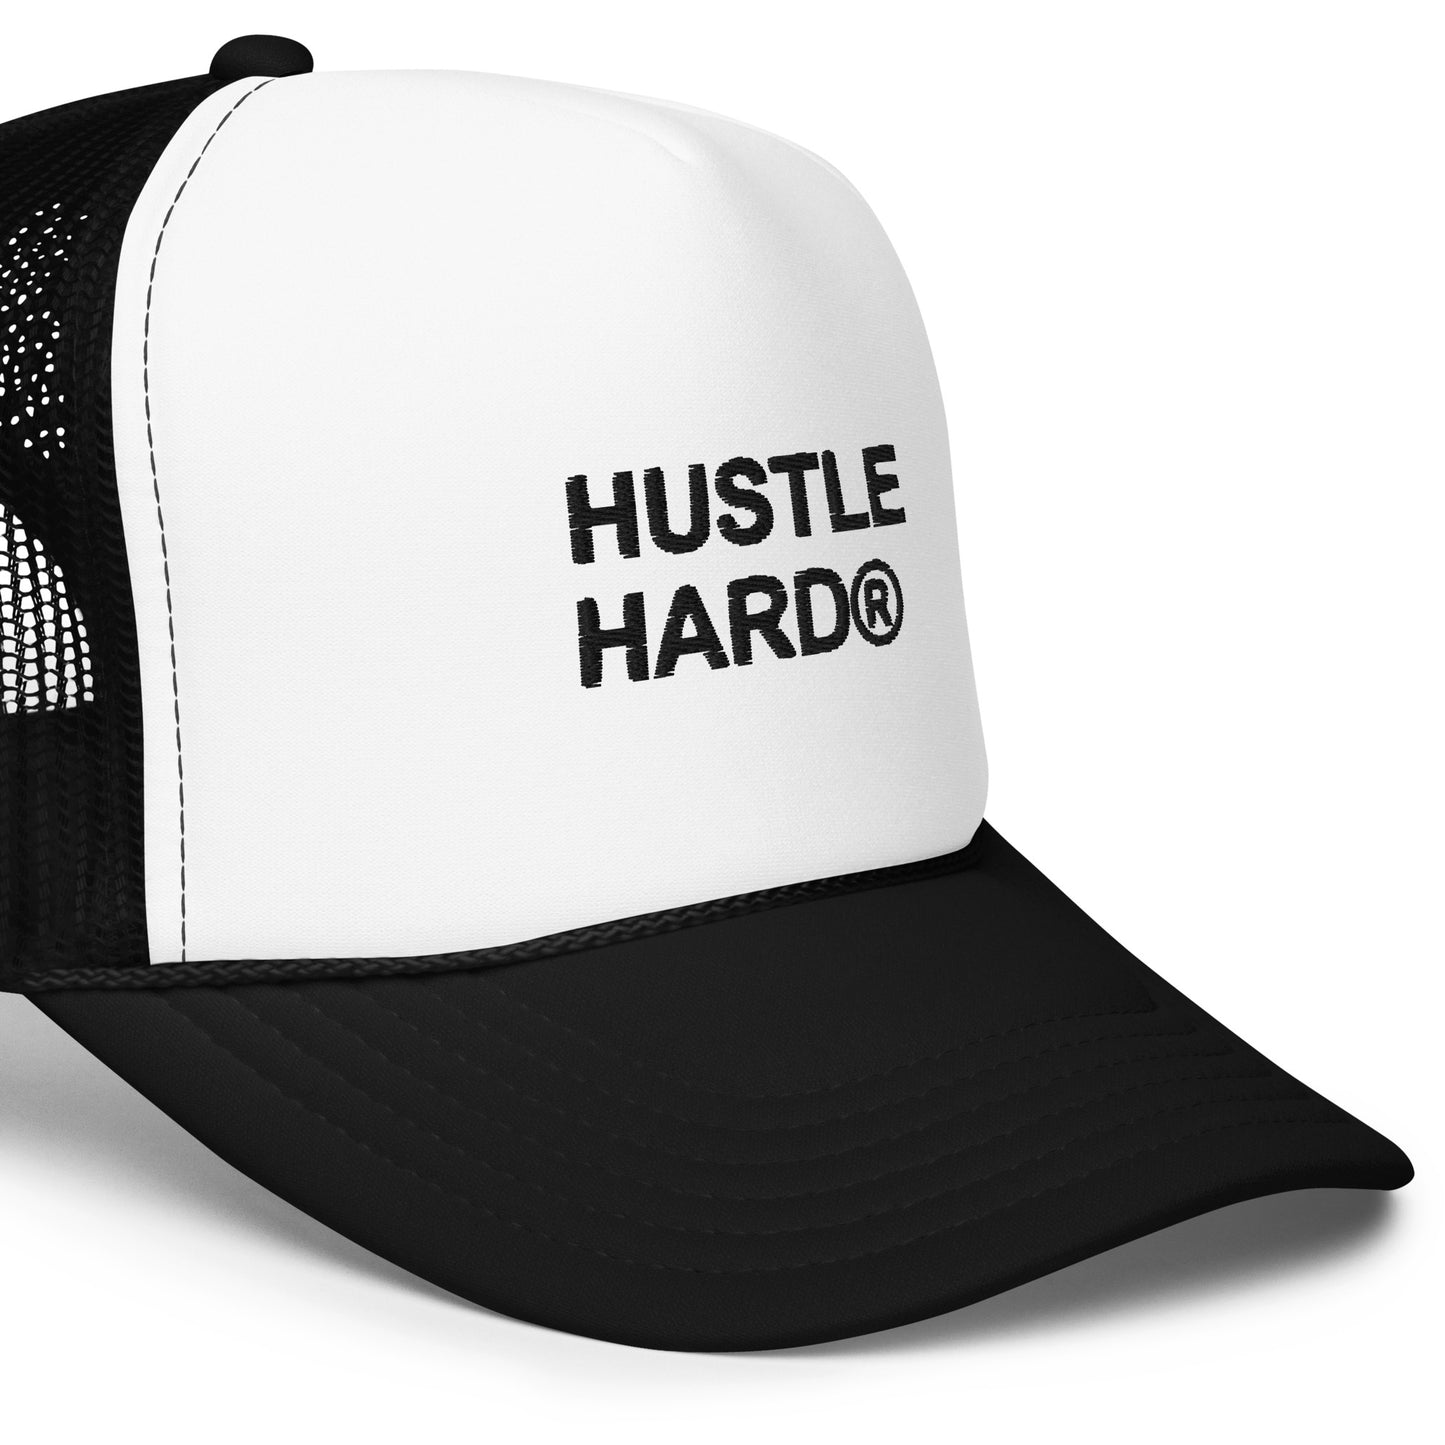 Hustle Hard: Foam trucker hat